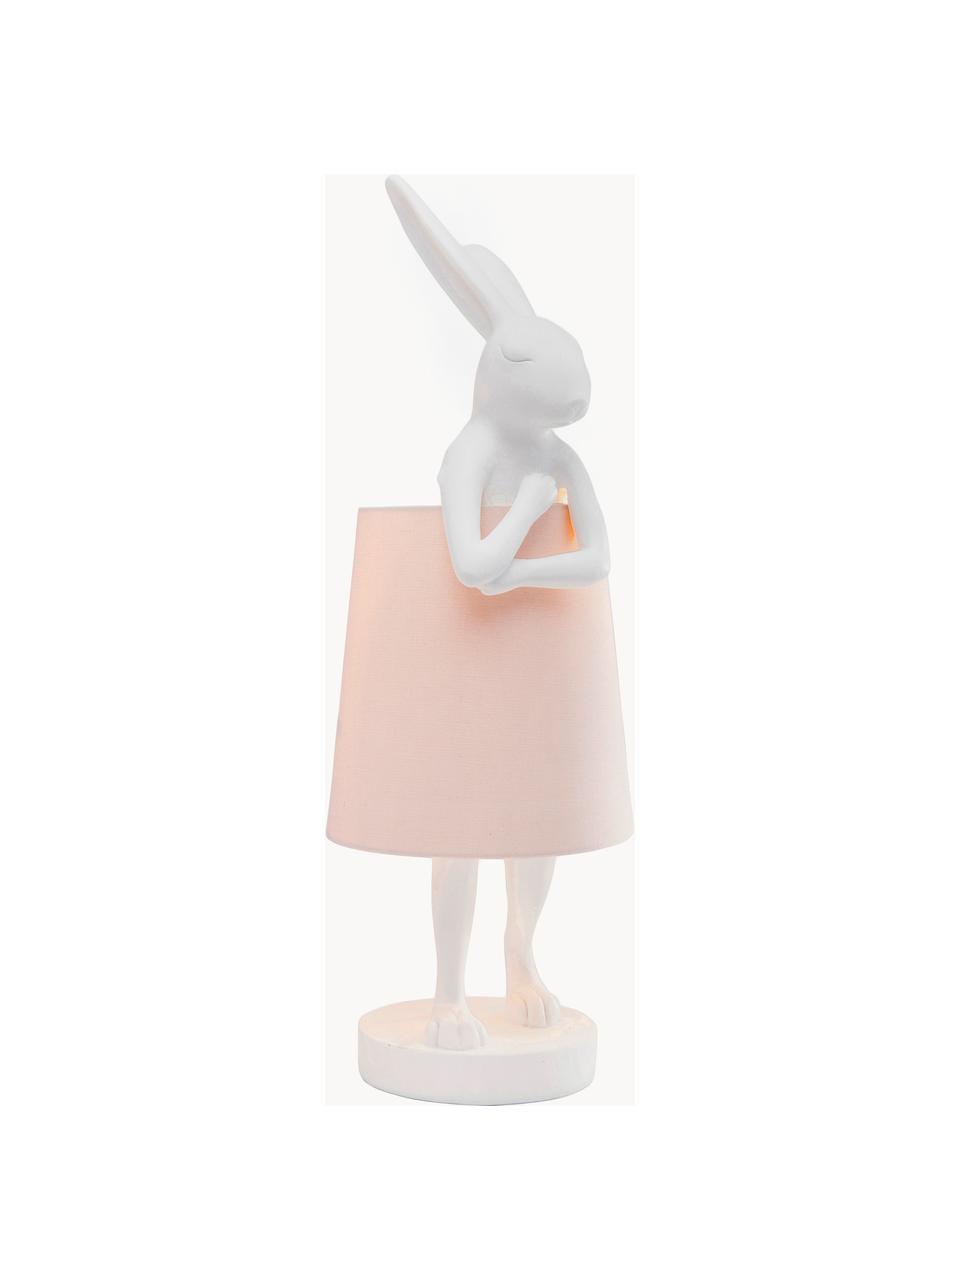 Grote design tafellamp Rabbit, Lampenkap: linnen, Lampvoet: polyresin, Stang: gepoedercoat staal, Wit, lichtroze, Ø 23 x H 68 cm